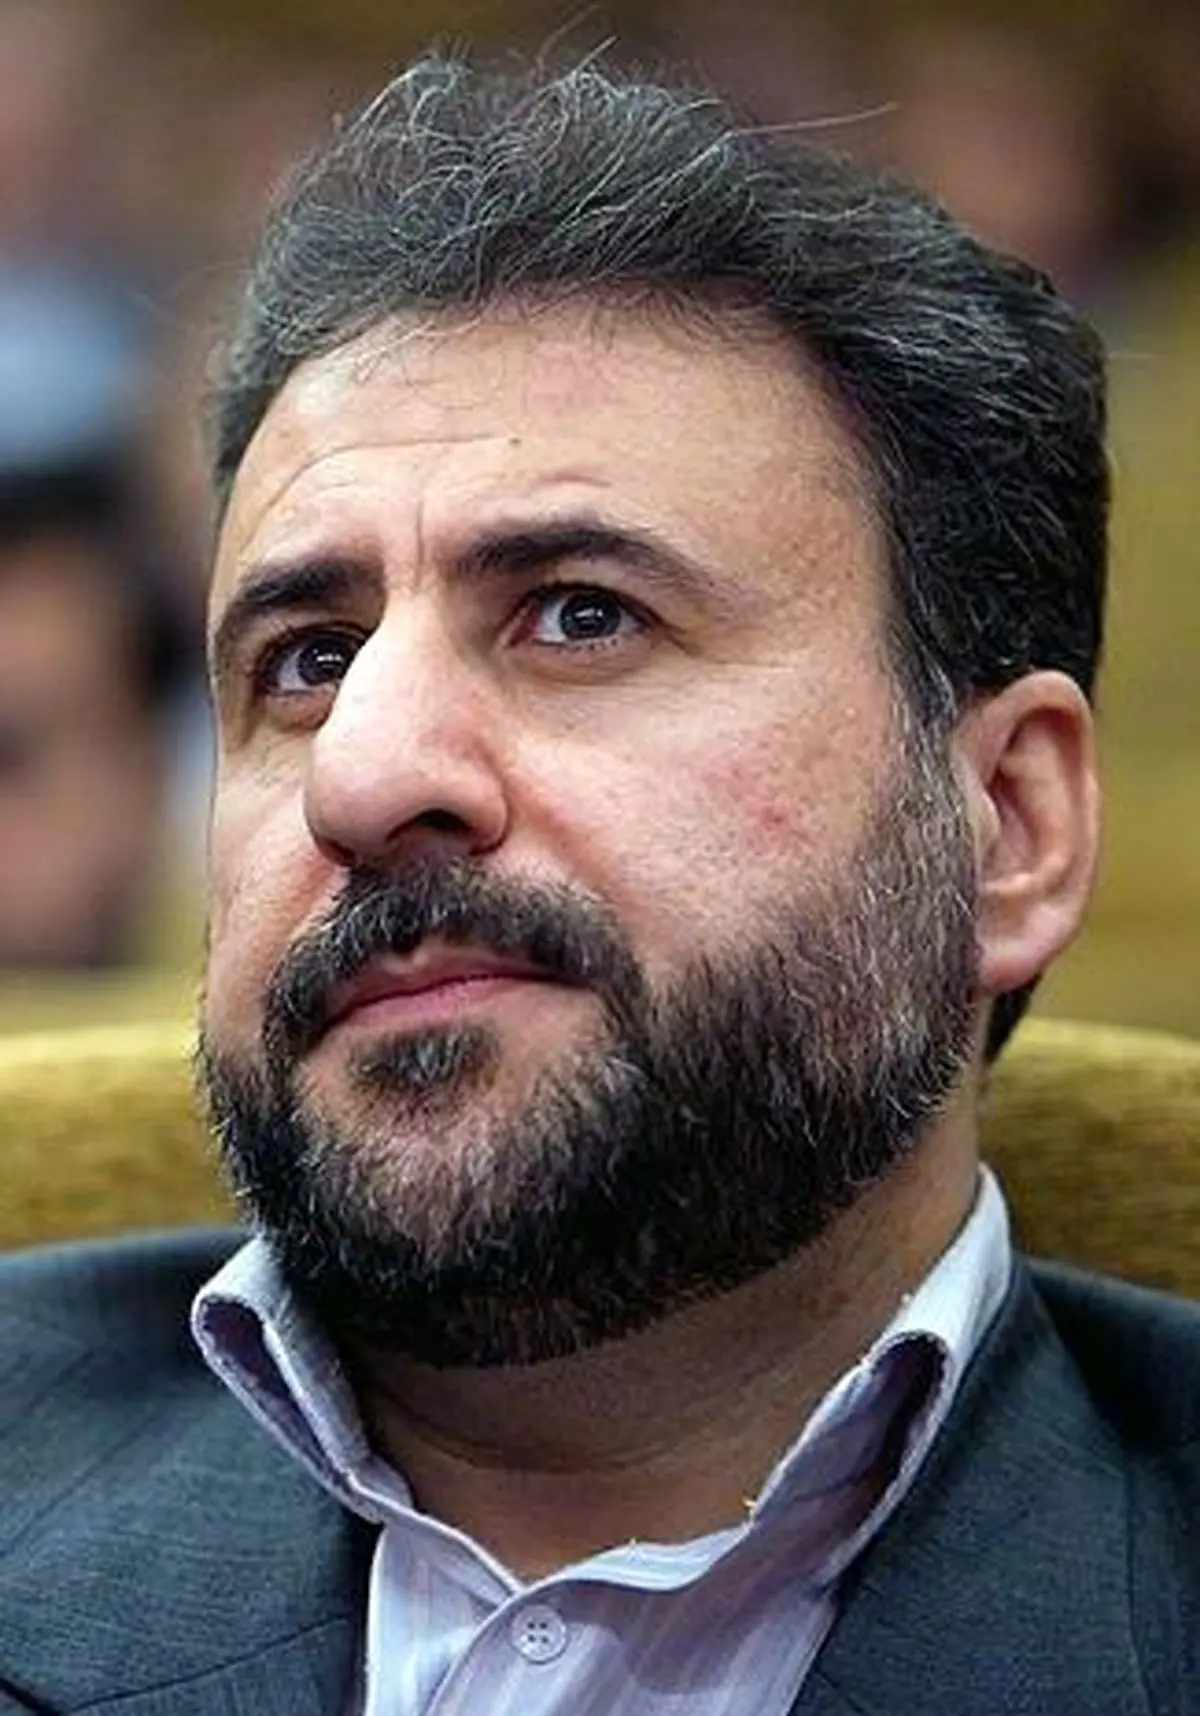  سوال نمایندگان کرمانشاه از وزیر اقتصاد درخصوص واگذاری پالایشگاه استان